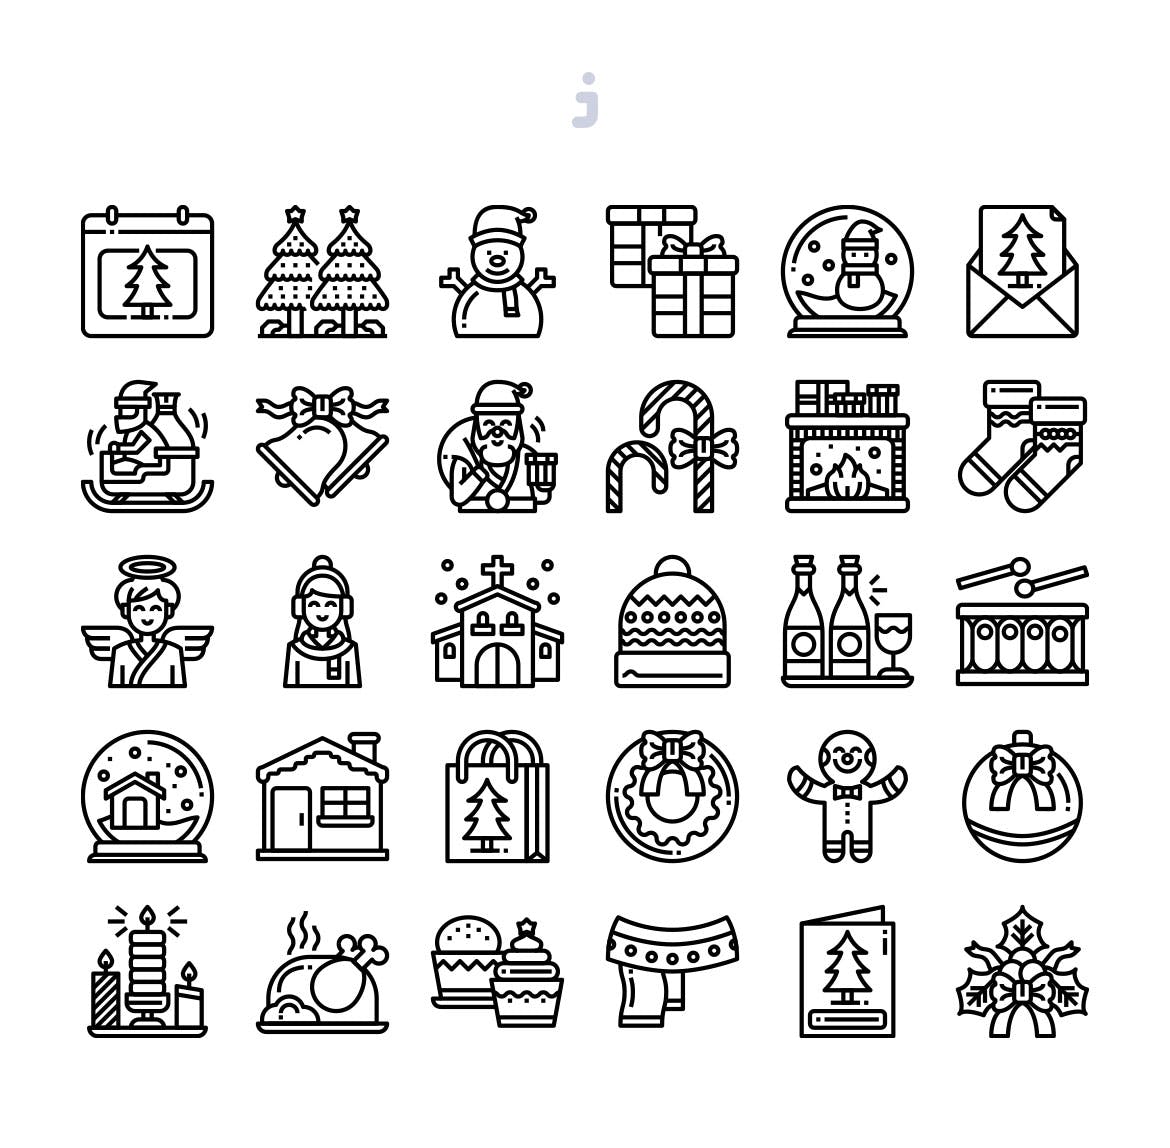 30枚圣诞日主题矢量图标 30 Christmas Day Icons插图(2)